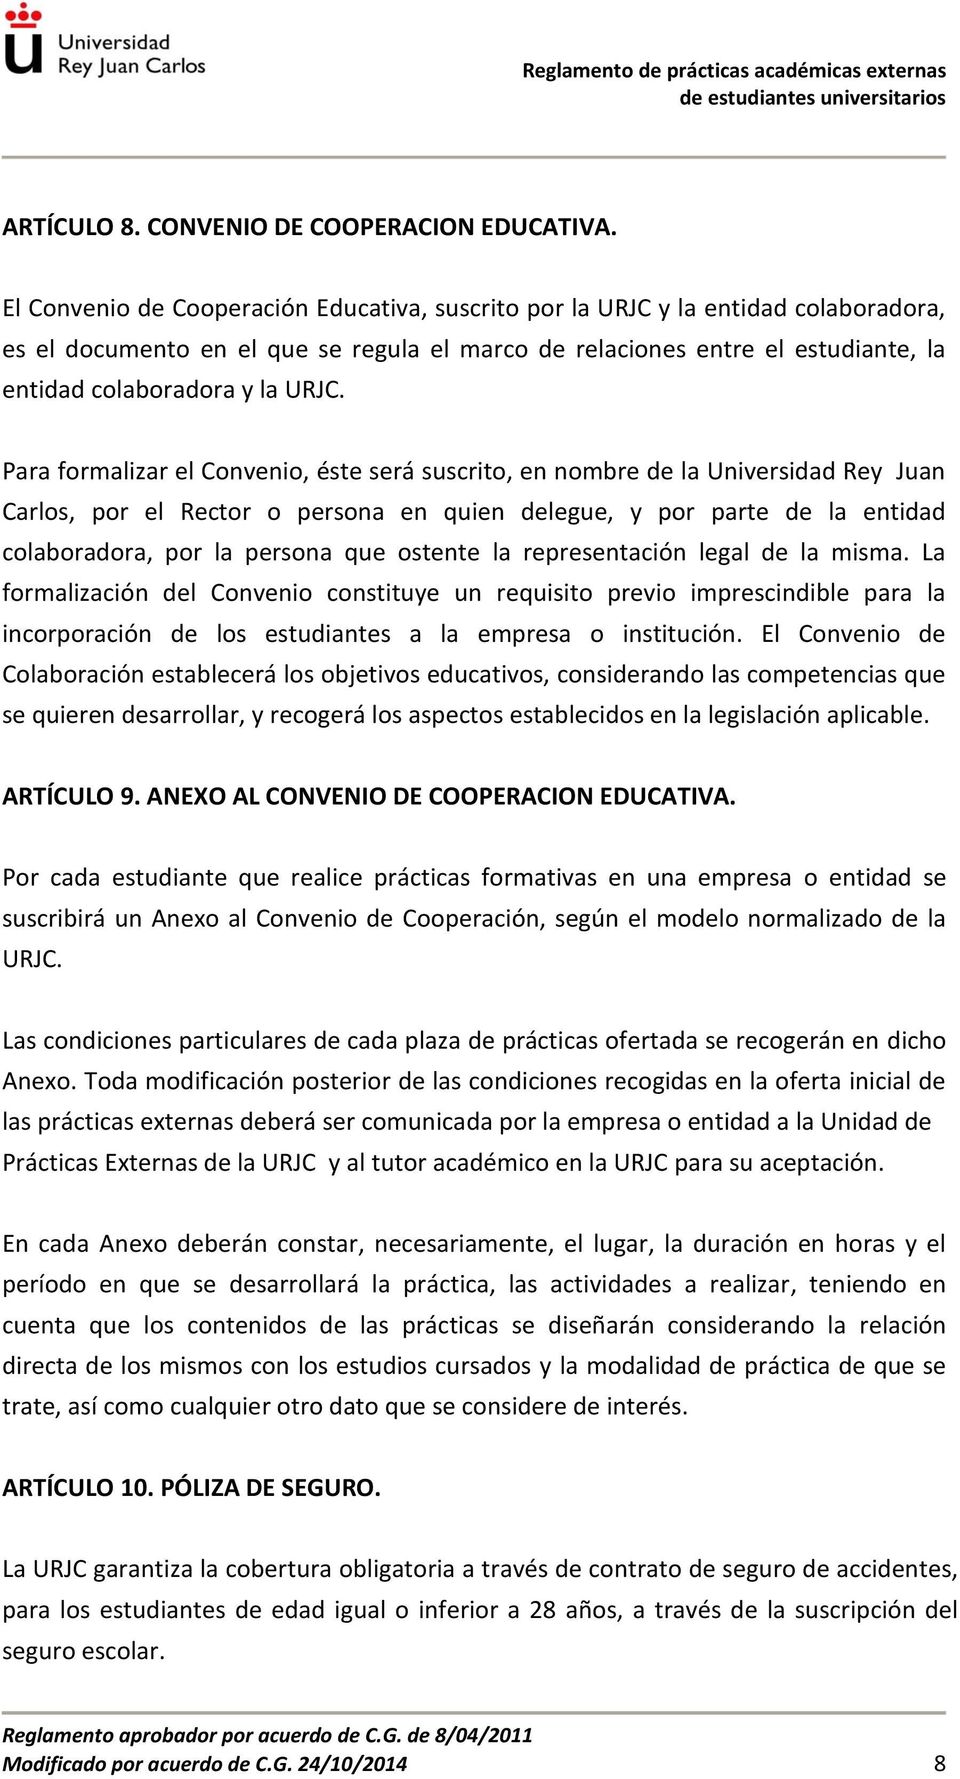 Para formalizar el Convenio, éste será suscrito, en nombre de la Universidad Rey Juan Carlos, por el Rector o persona en quien delegue, y por parte de la entidad colaboradora, por la persona que